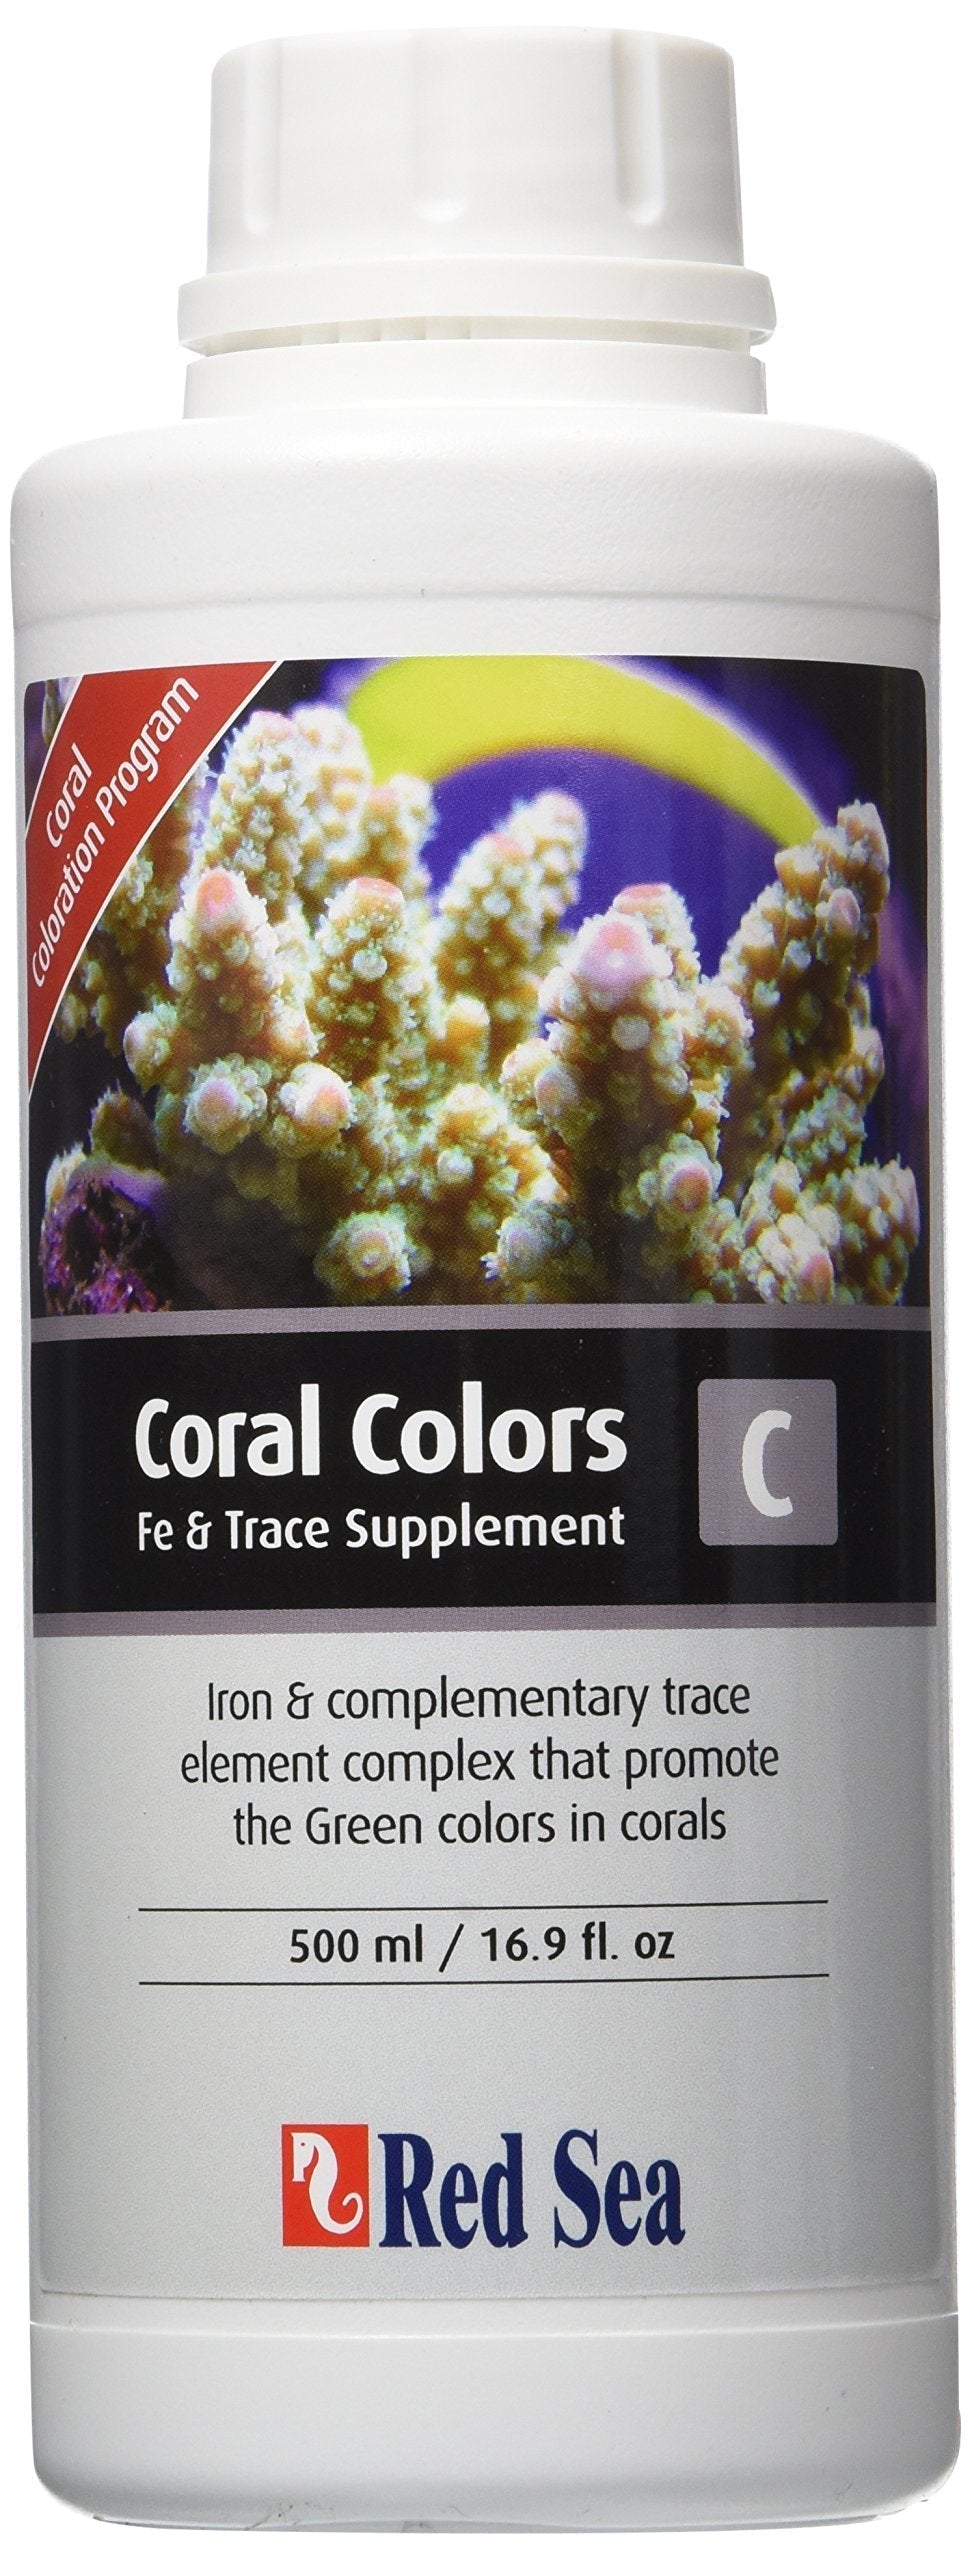 [Australia] - Red Sea Fish Pharm ARE22063 Coral Colors Iron/Trace Supplement-C for Aquarium, 500ml 